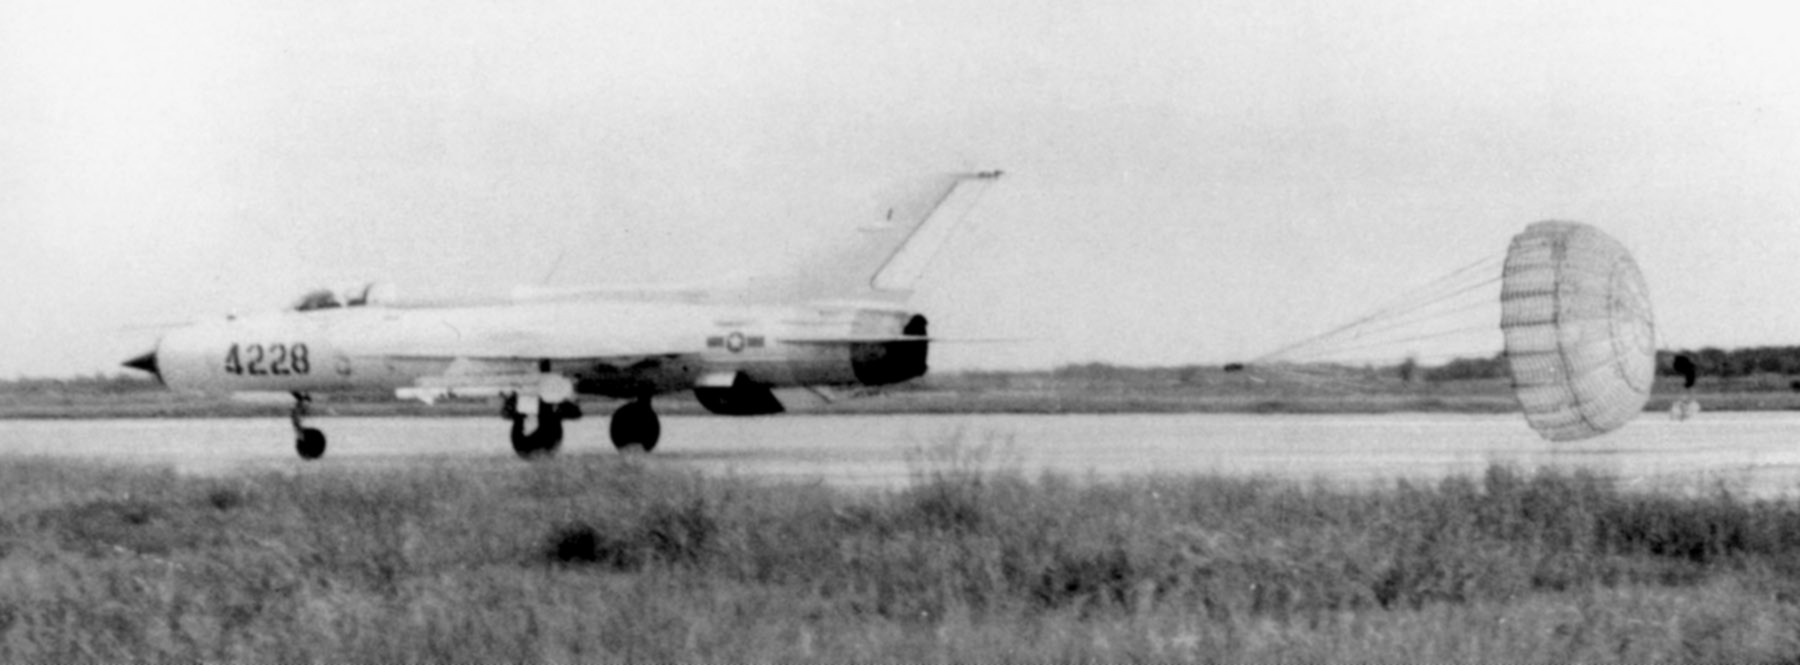 MiG-21 PF de la Fuerza aérea norvietnamita despliega su paracaídas de frenada al aterrizar tras realizar una misión. El avión está armado con misiles aire-aire AA-2 Atoll.